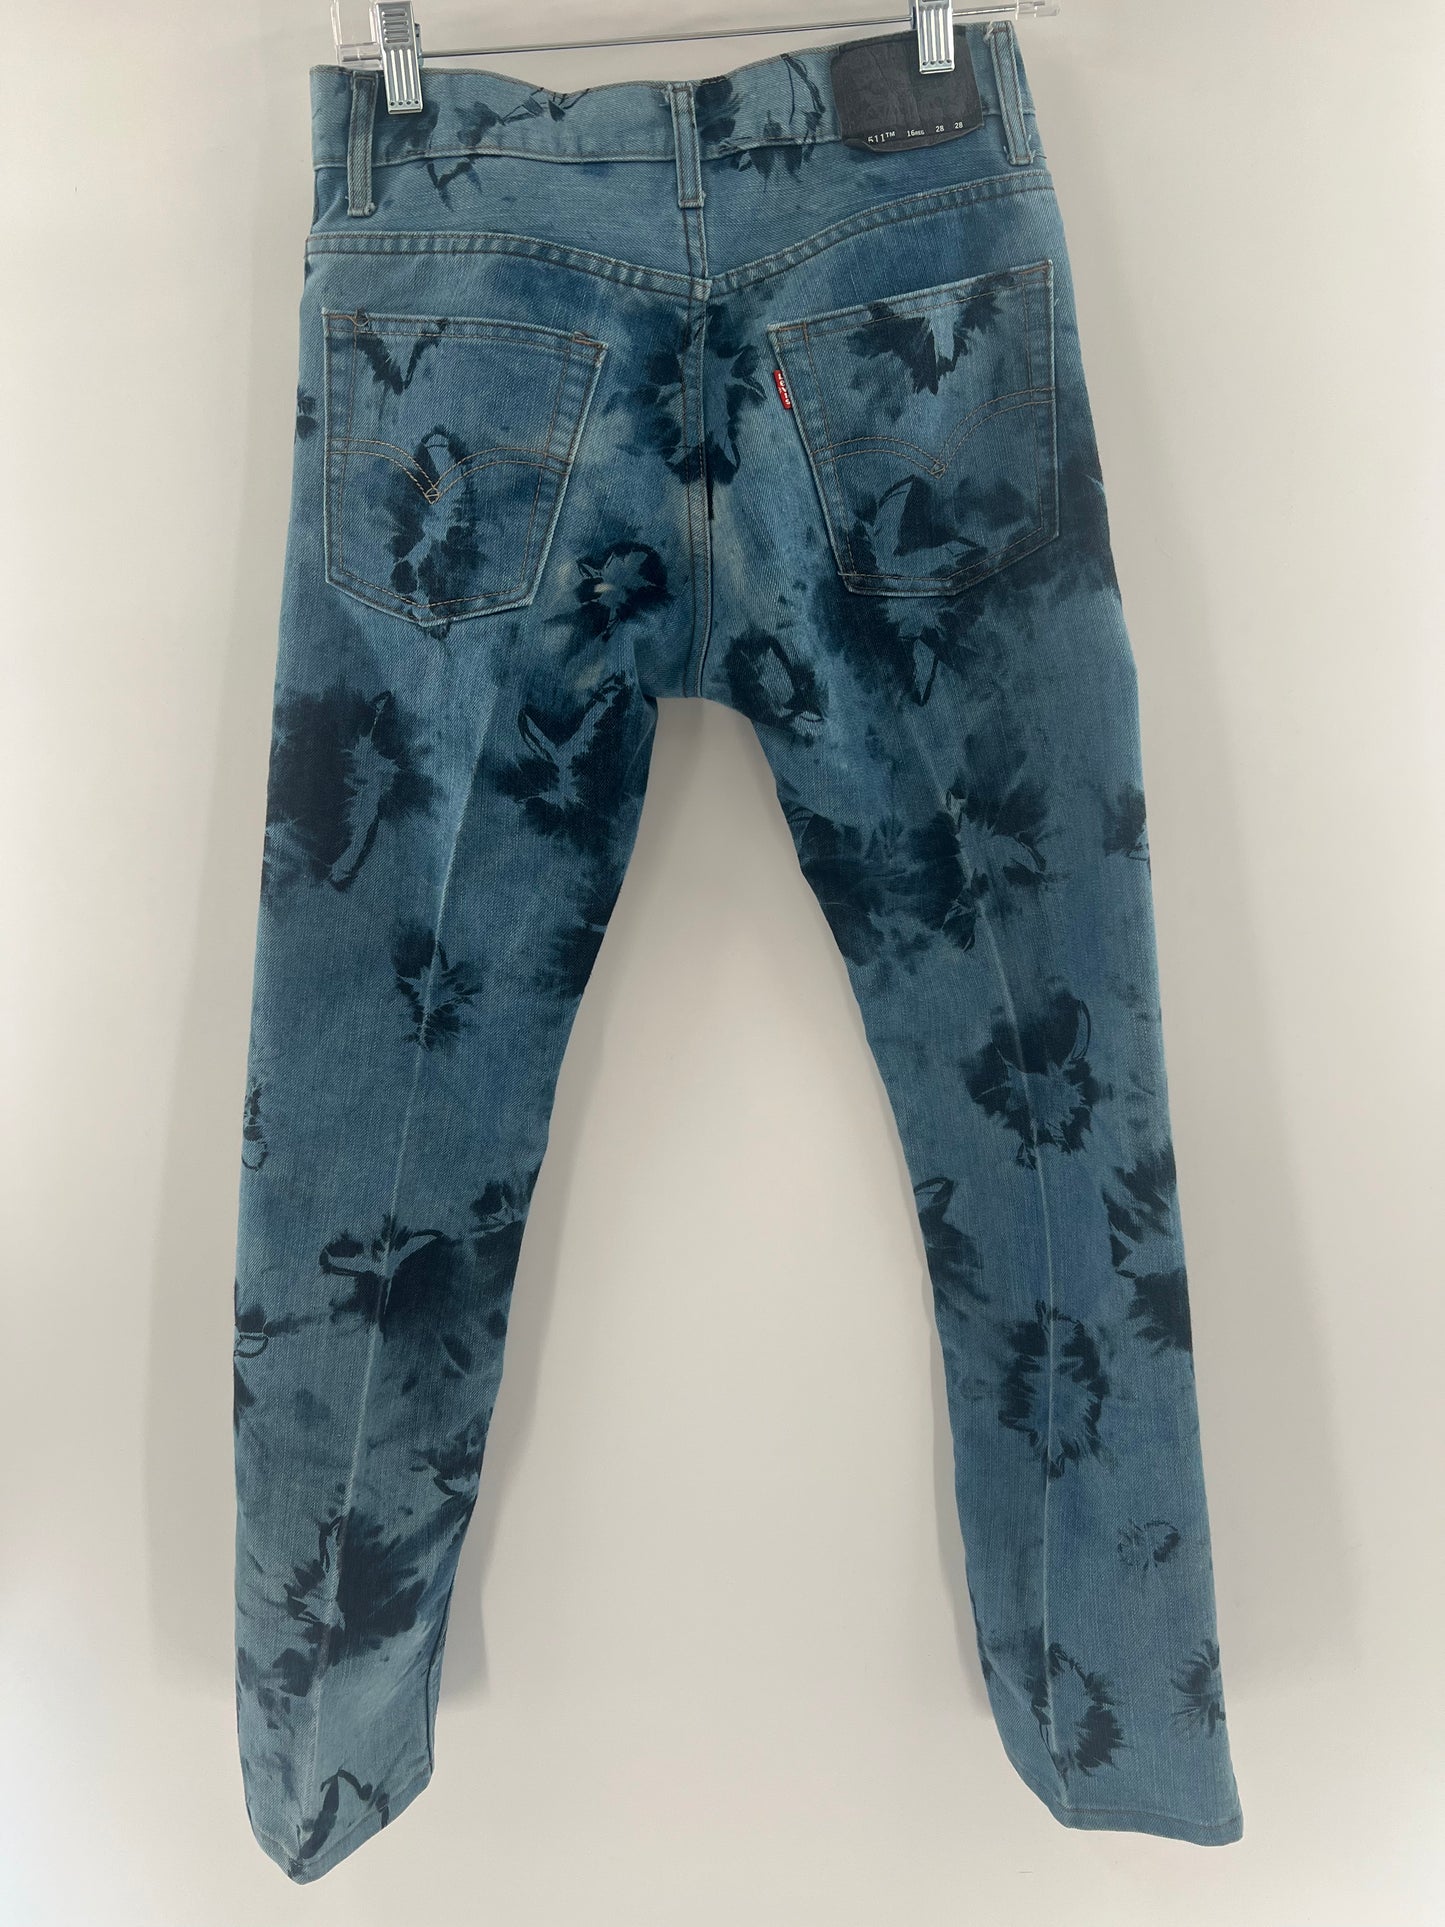 Levi Strauss Urban Outfitters 511 Slim tie-dye (size 28 x 28 / 16 Reg)